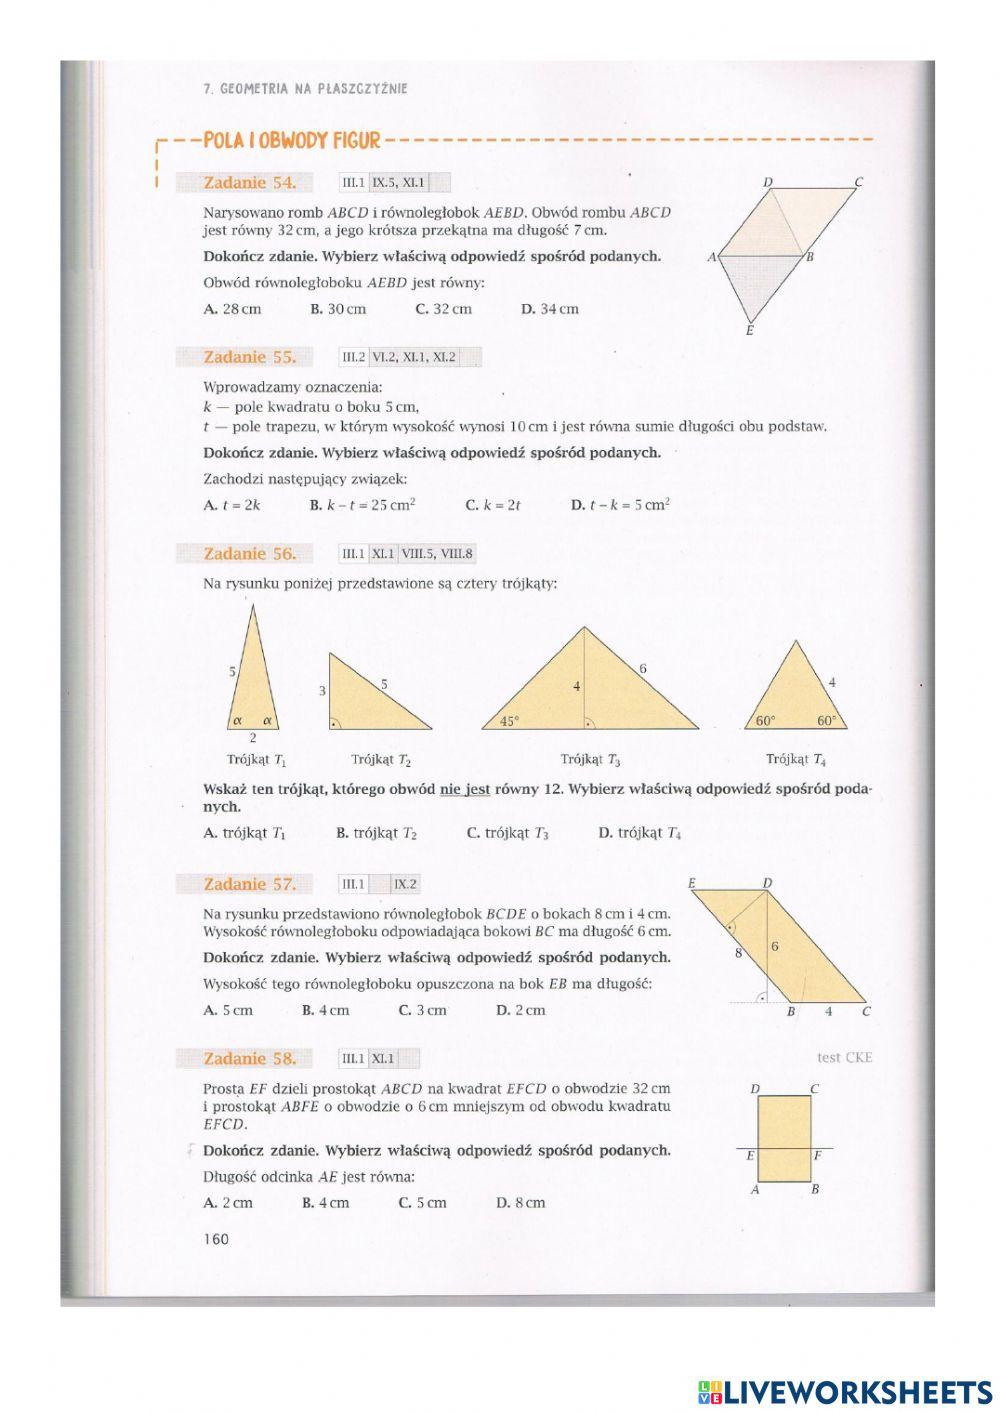 7.3 Geometria na płaszczyźnie - zadania 2